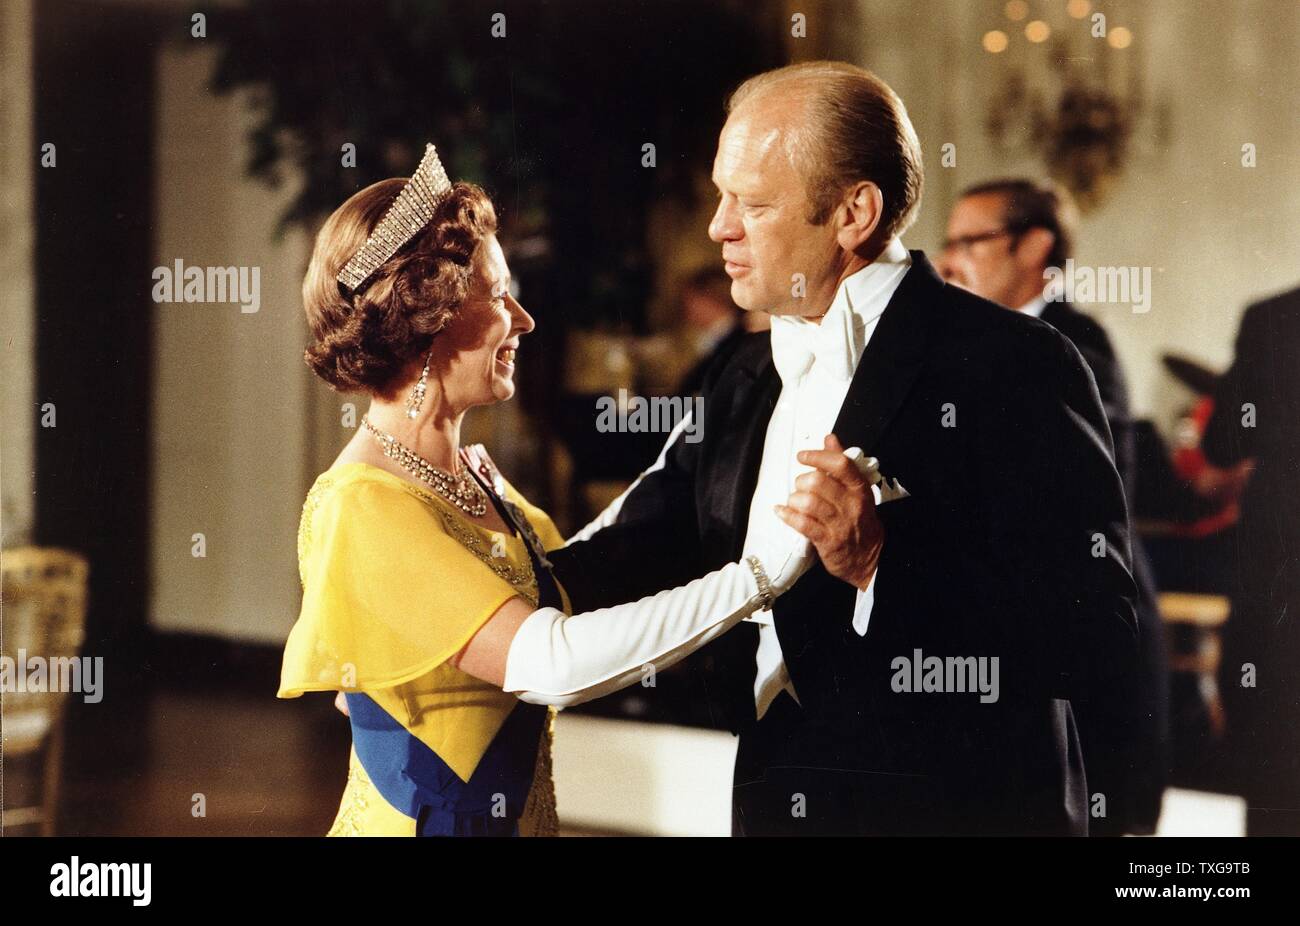 Gerald Ford, 38e président des États-Unis (1974-1977), danse avec la reine Elizabeth II au bal à la Maison Blanche, Washington, au cours de la 1976 Célébrations du bicentenaire de la Déclaration d'Indépendance Banque D'Images